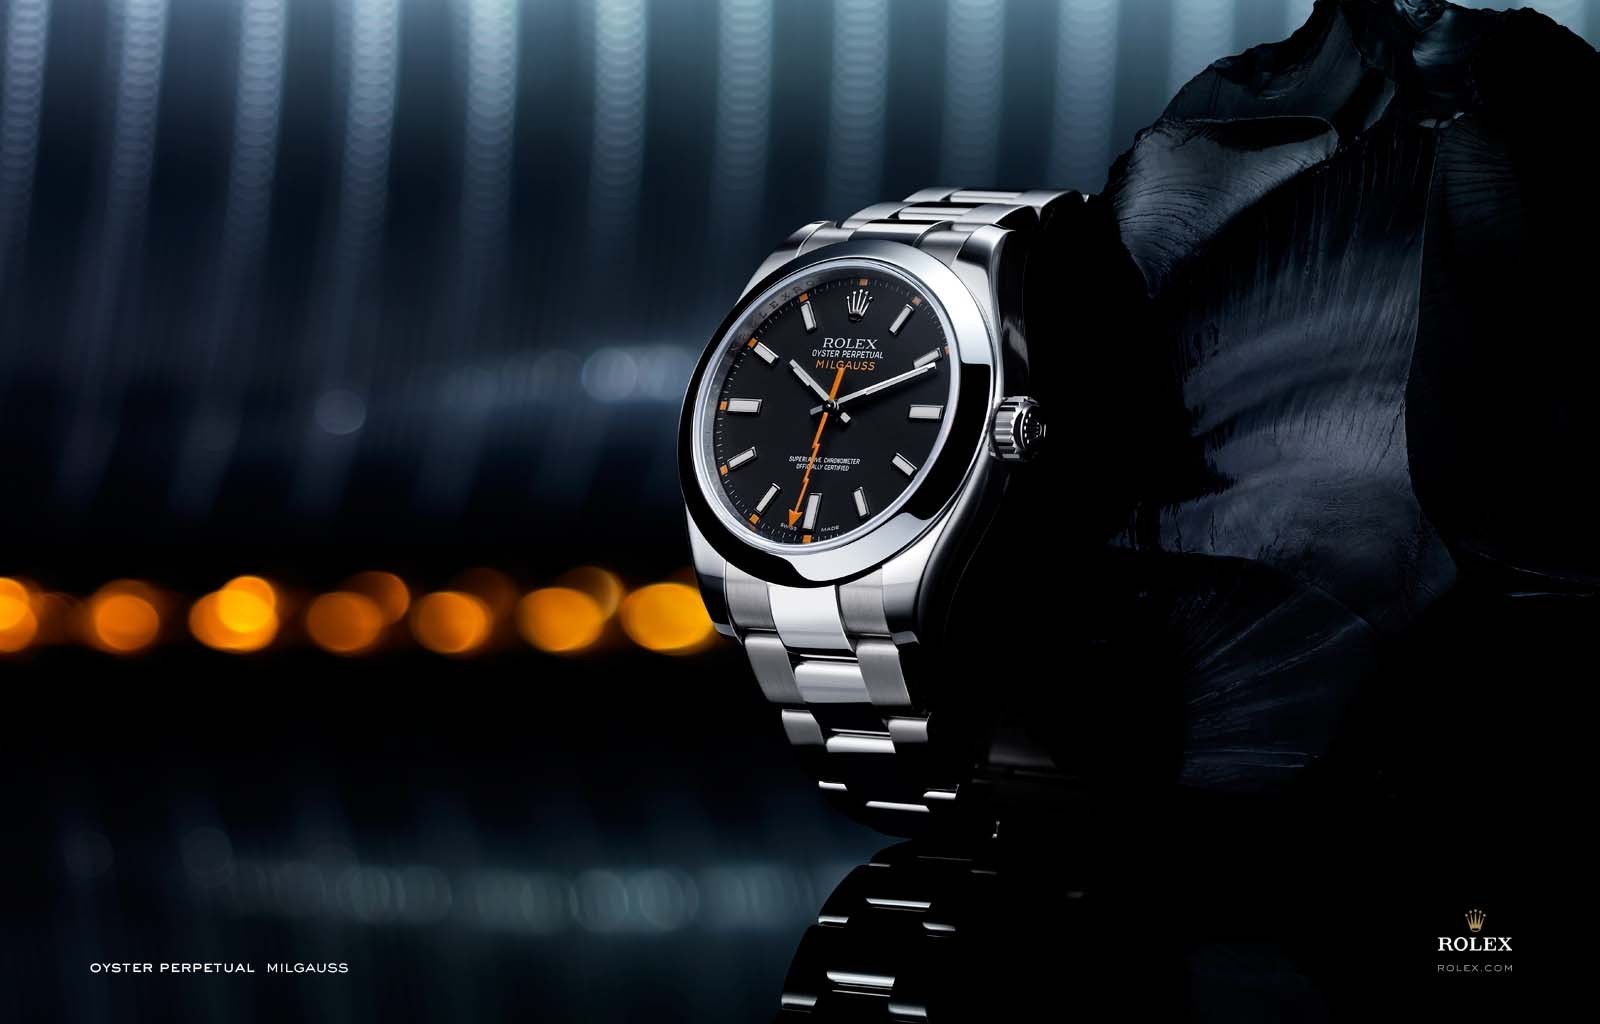 Watch Luxury Watches Watch Watch Rolex 1600x1024